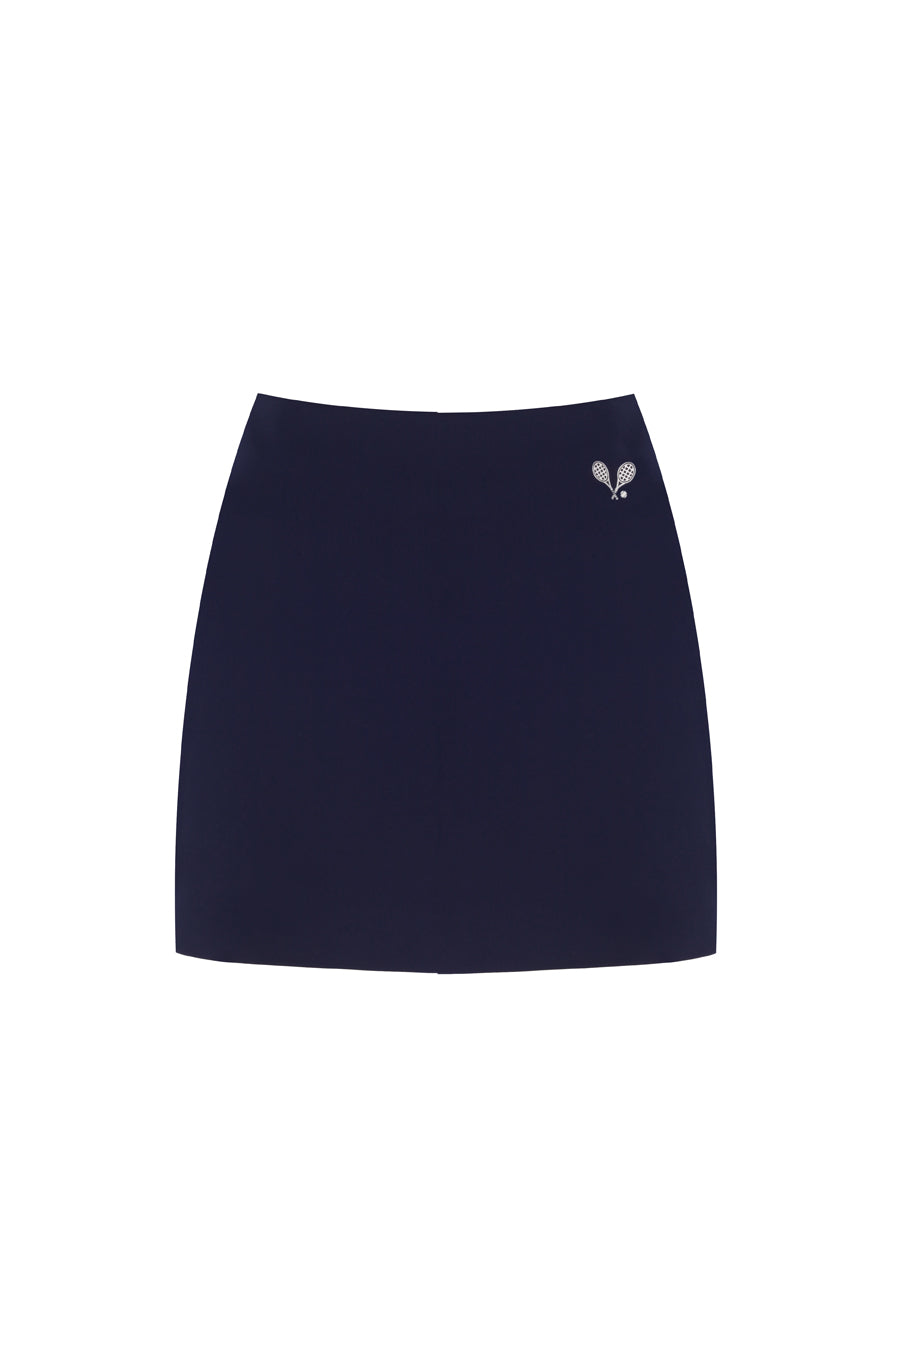 Court Mid-Rise Navy Blue Skirt